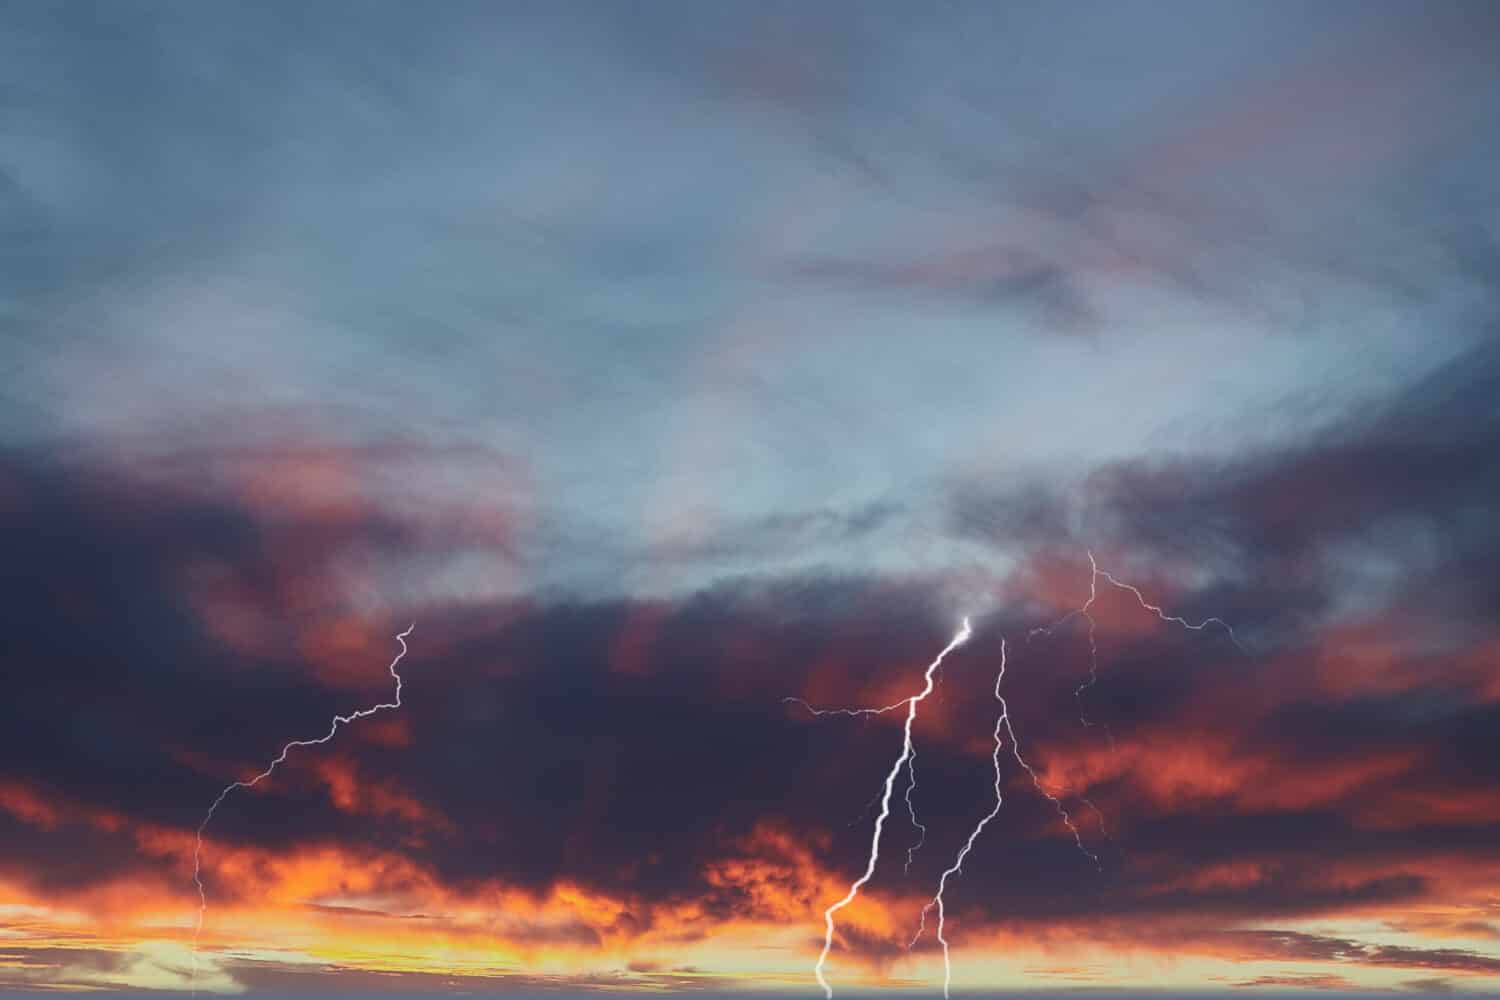 Fulmine quasi da nuvola a terra con tramonto rosso ardente e fulmini a nastro.